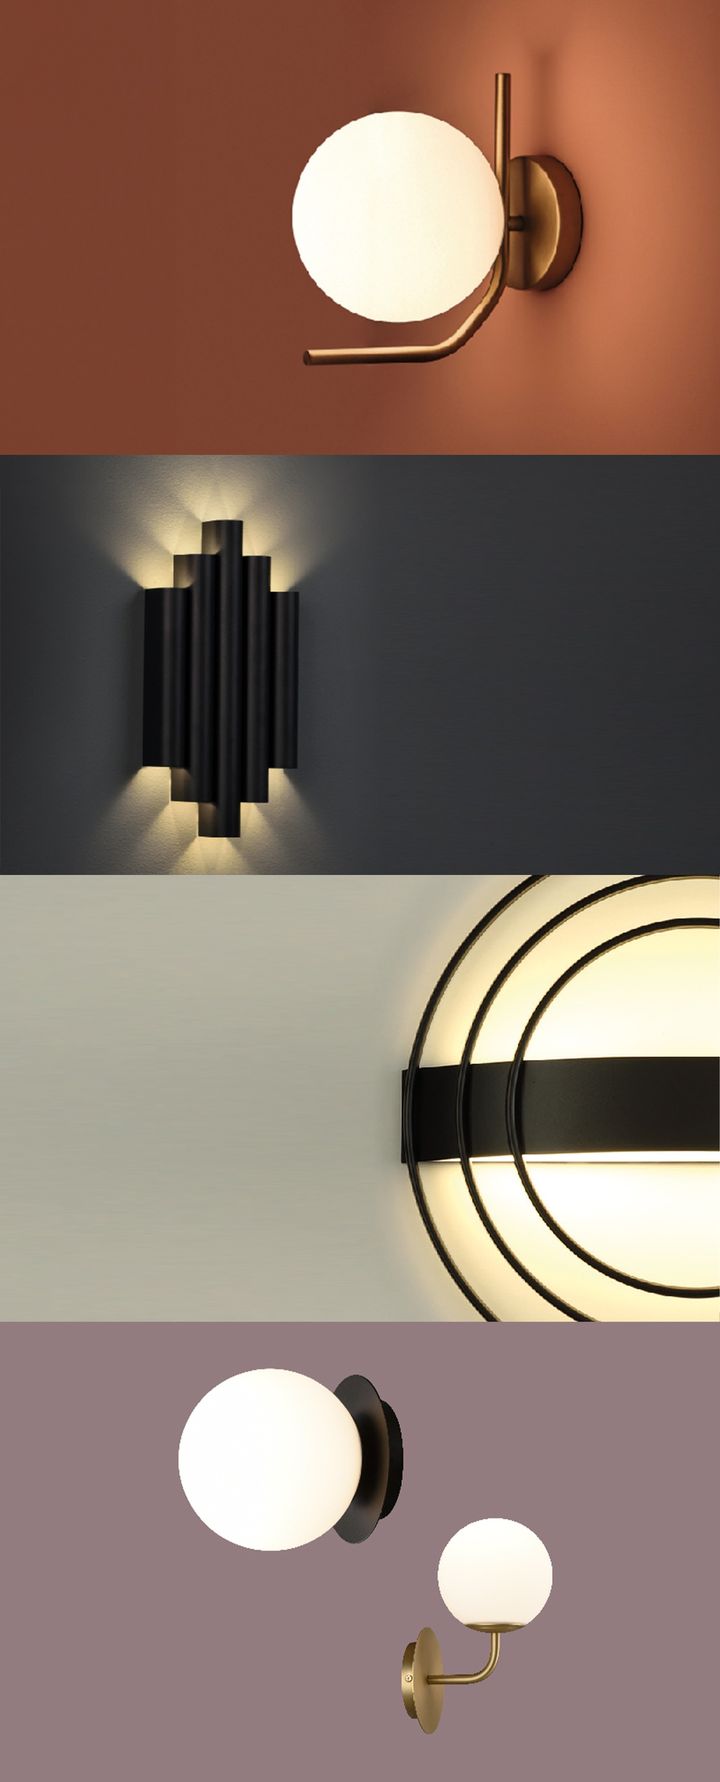 Lampade da Parete Decorative #ACB in stile Deco 🍸

Una selezione